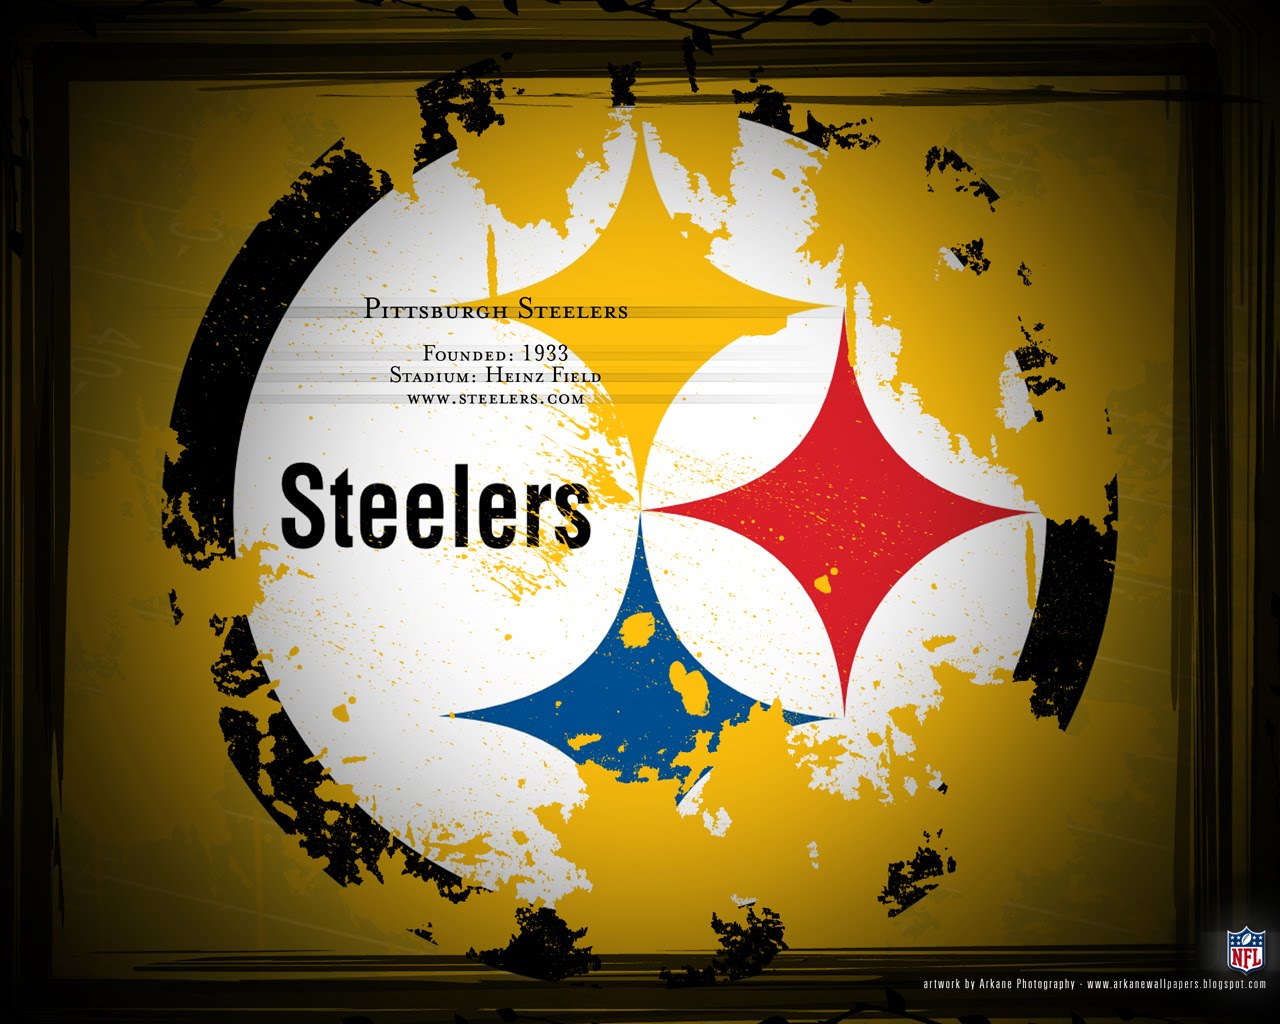  Pittsburgh Steelers desktop background Pittsburgh Steelers